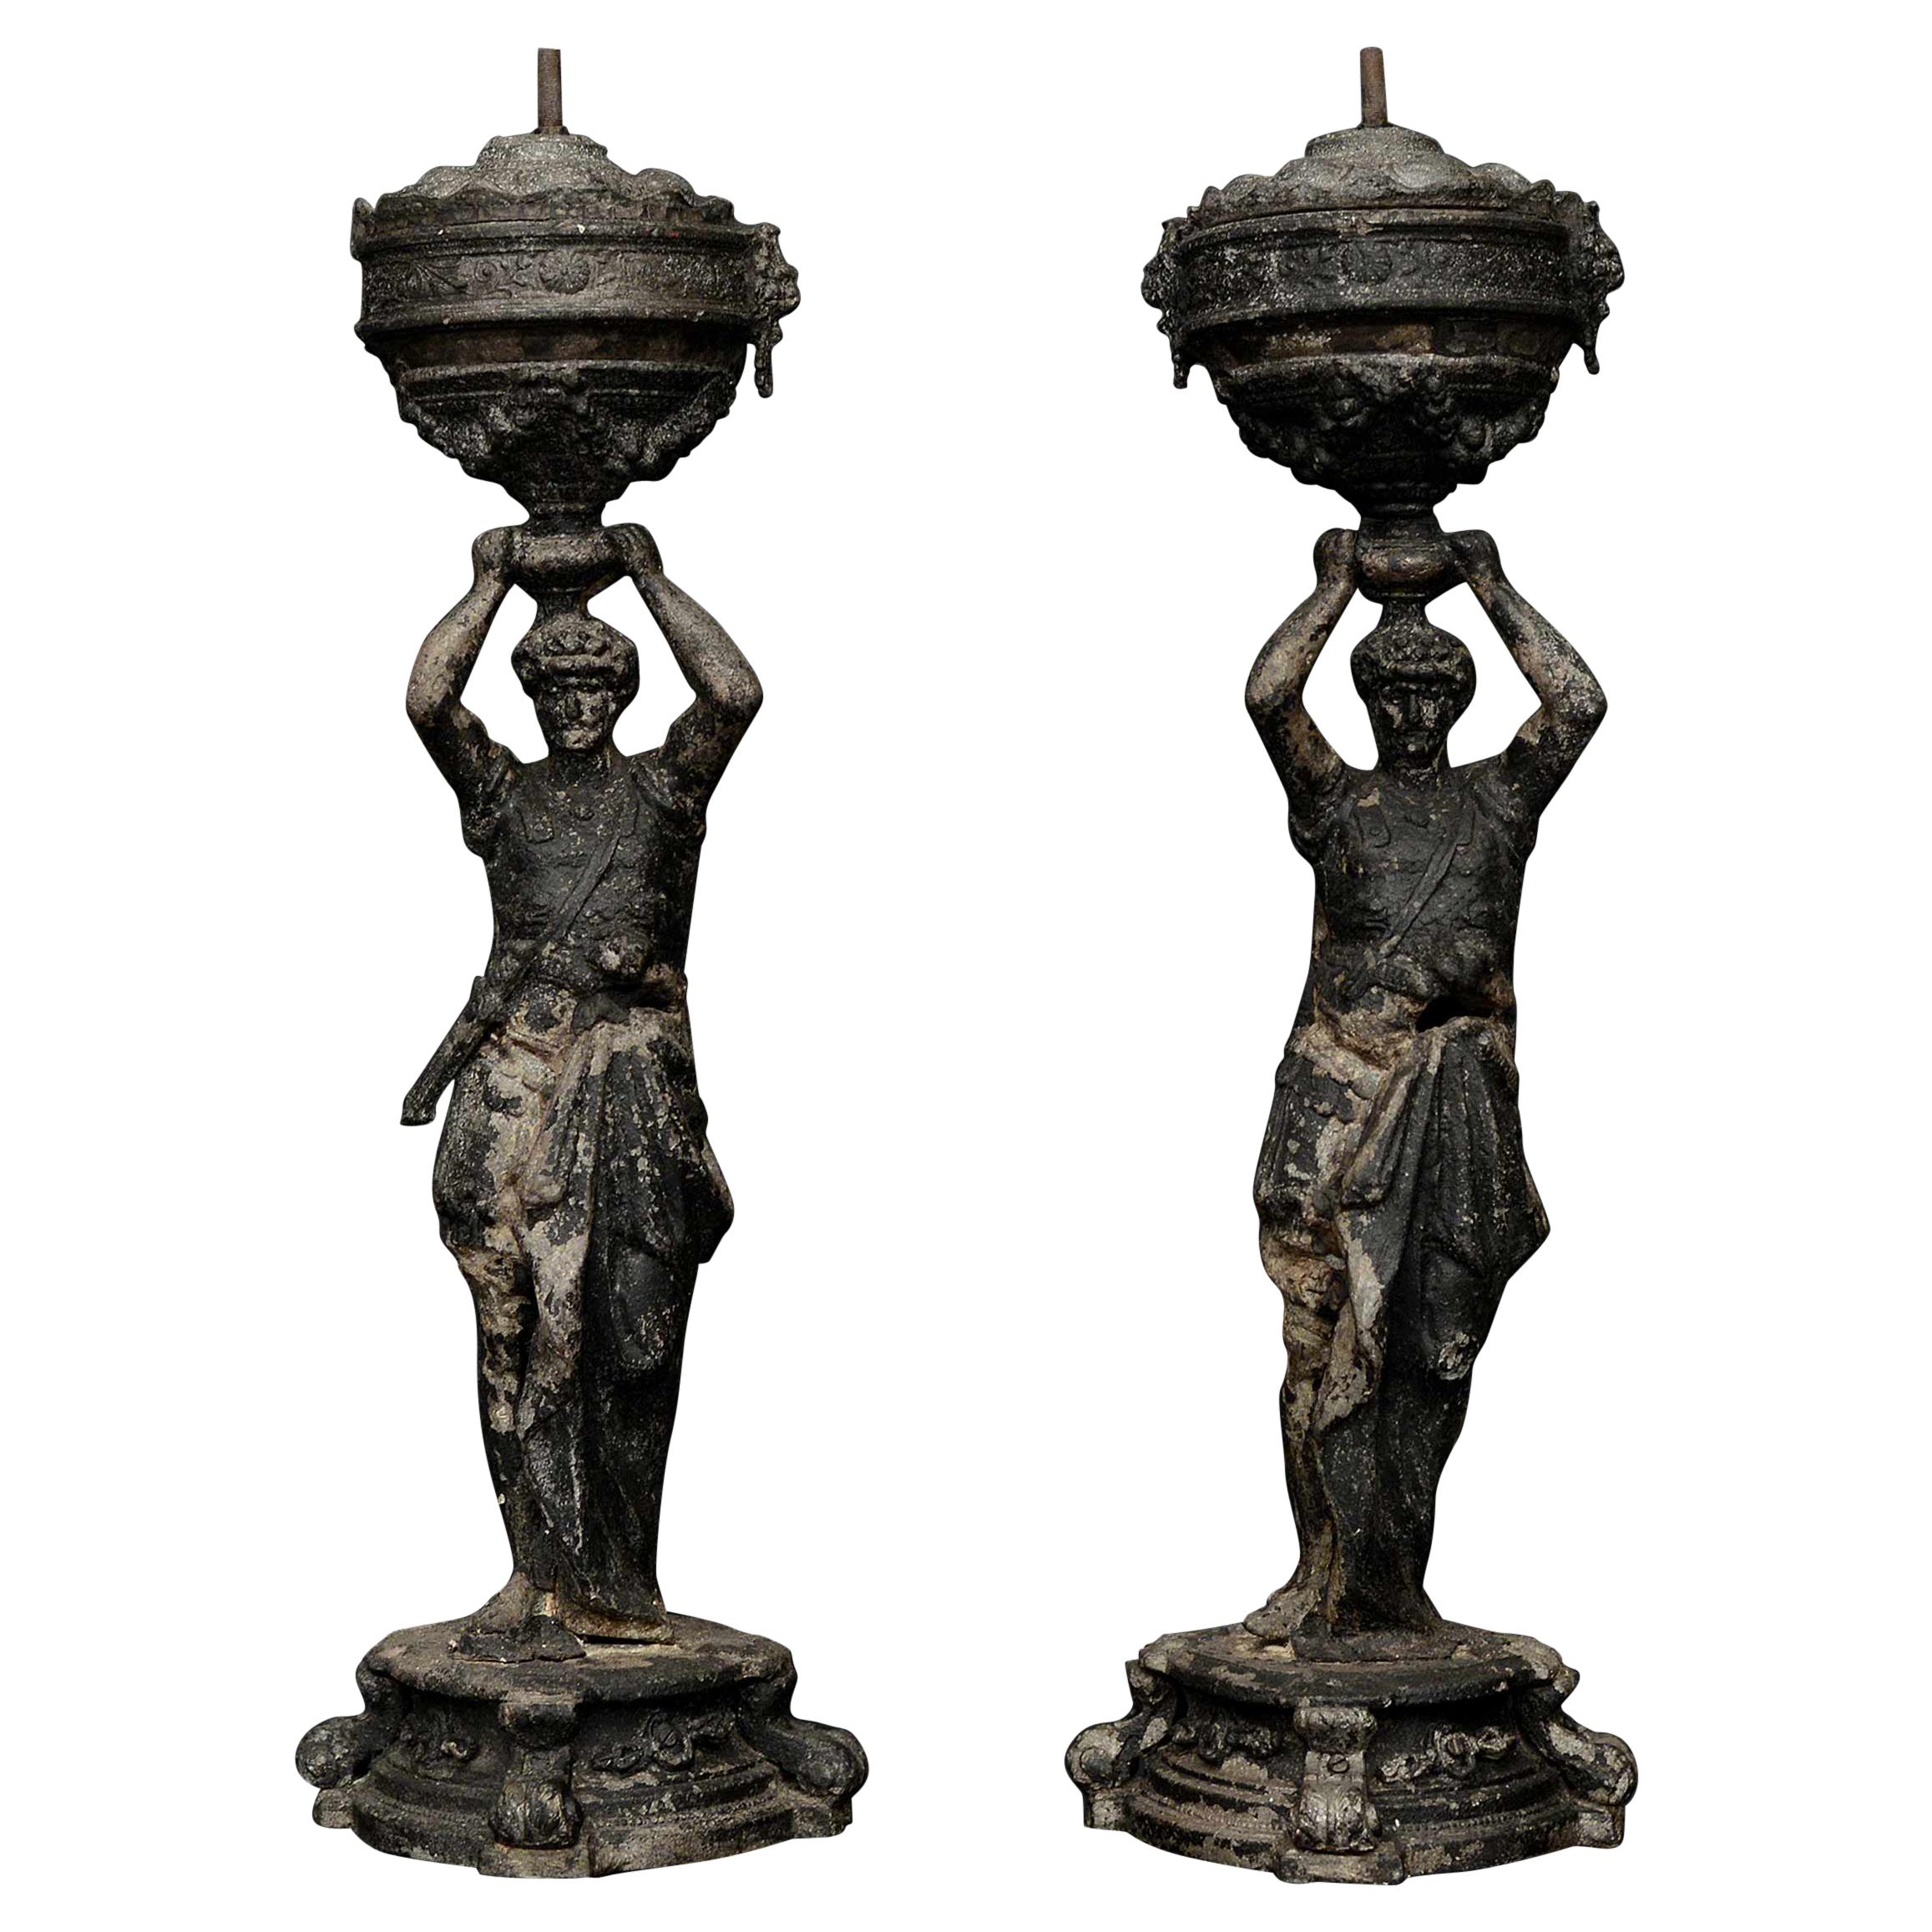 Paire de figurines architecturales françaises de cariatides en zinc brut moulé